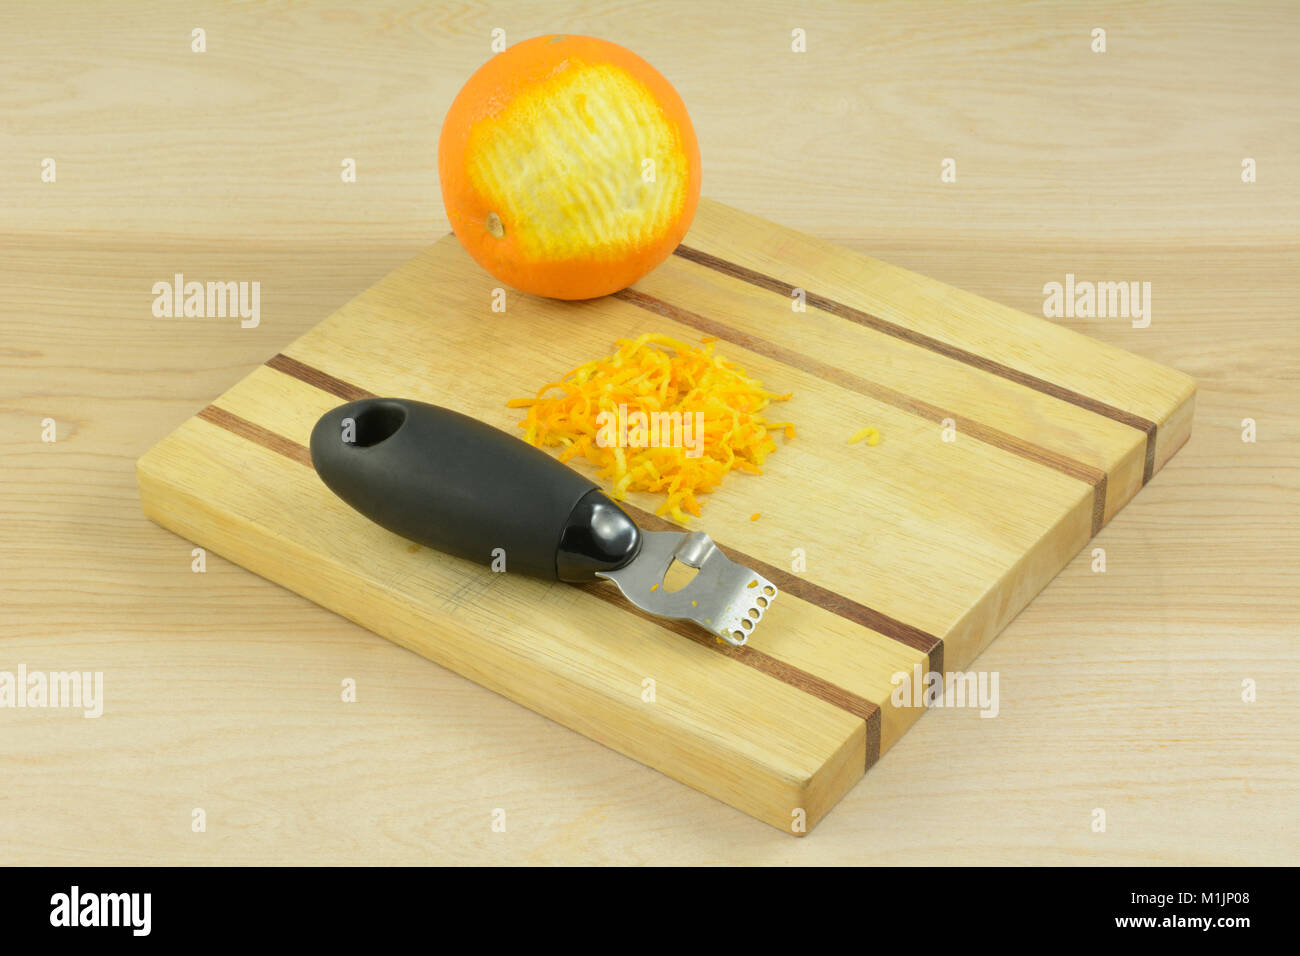 Arancione, scorza di arancia e zester arnese da cucina sul tagliere di legno Foto Stock